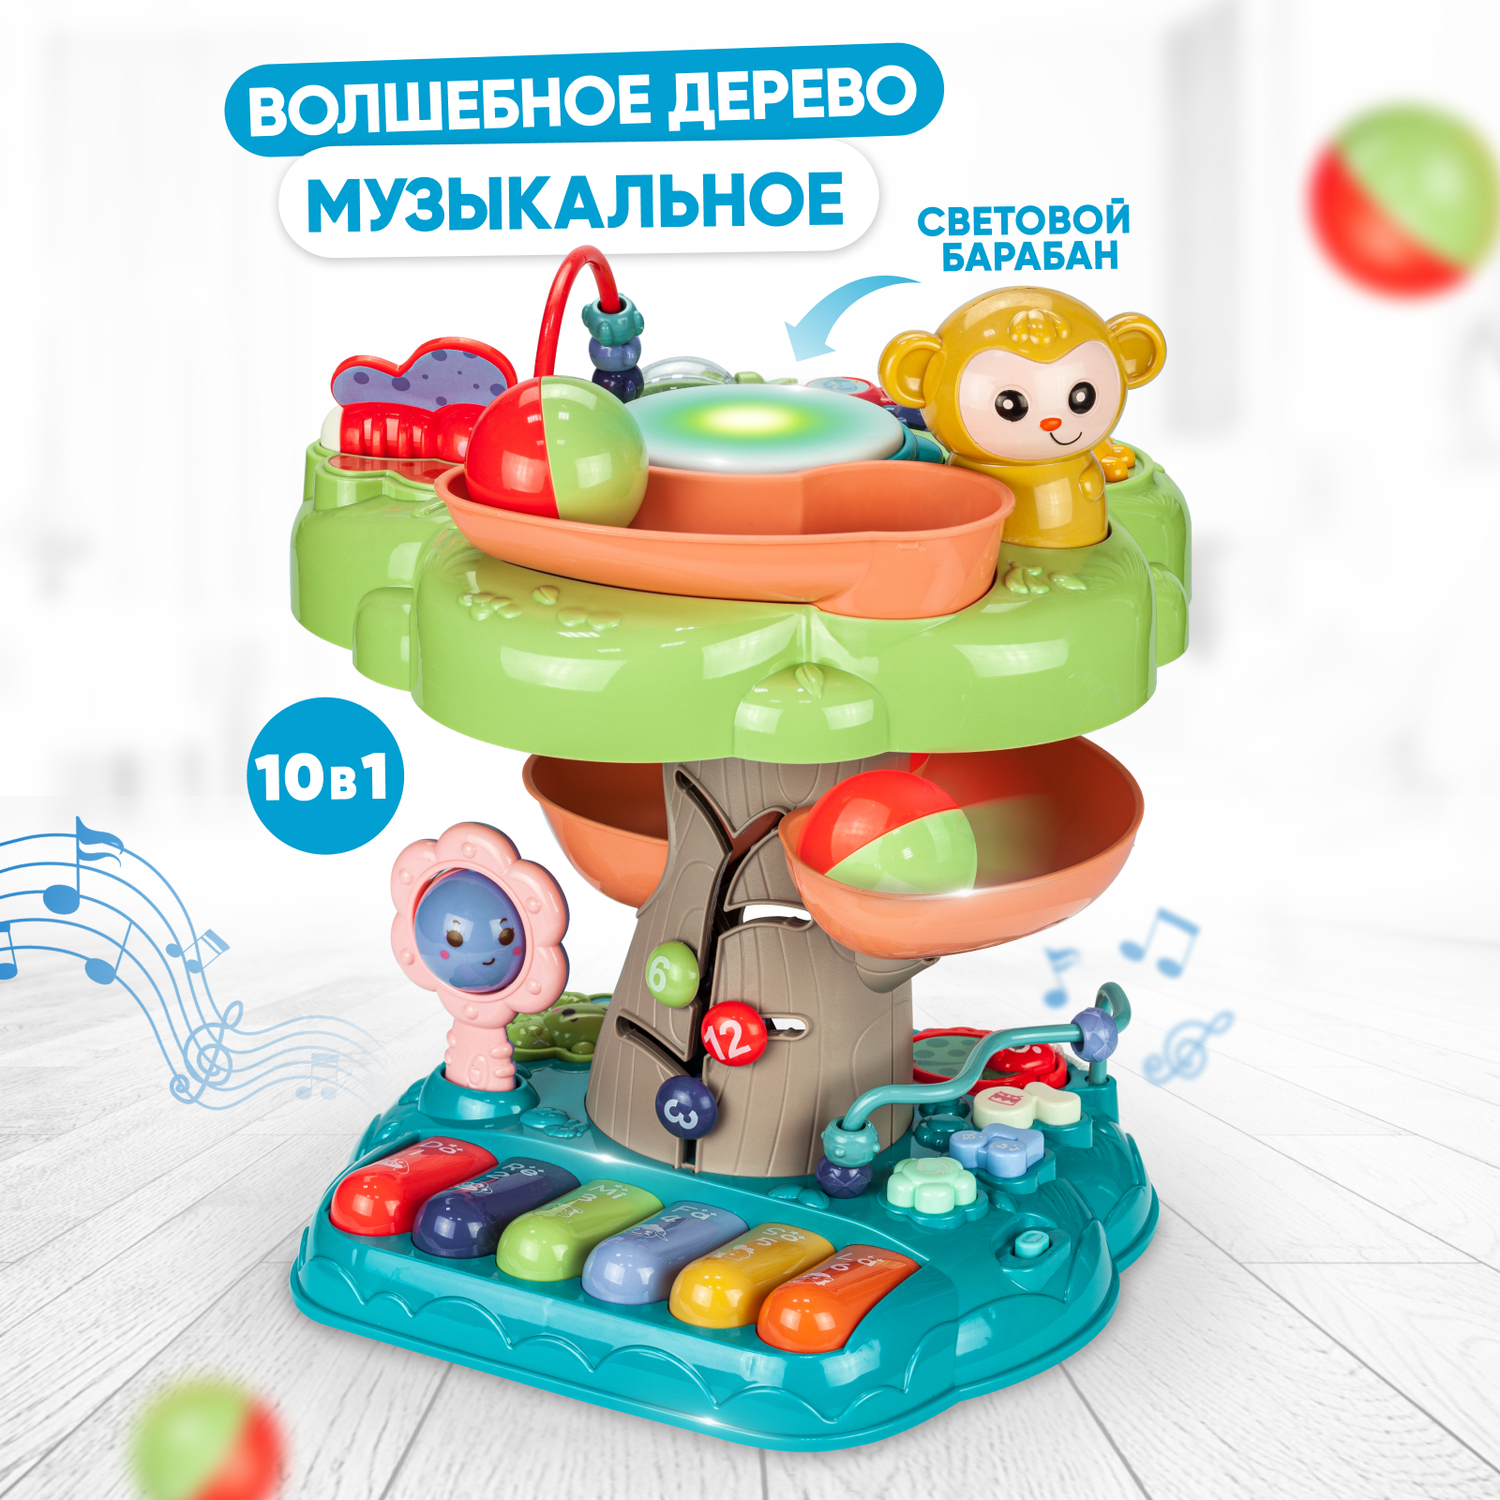 Интерактивная настольная игра Solmax Волшебное дерево с музыкальными инструментами и погремушкой игрушка сортер для малышей - фото 1